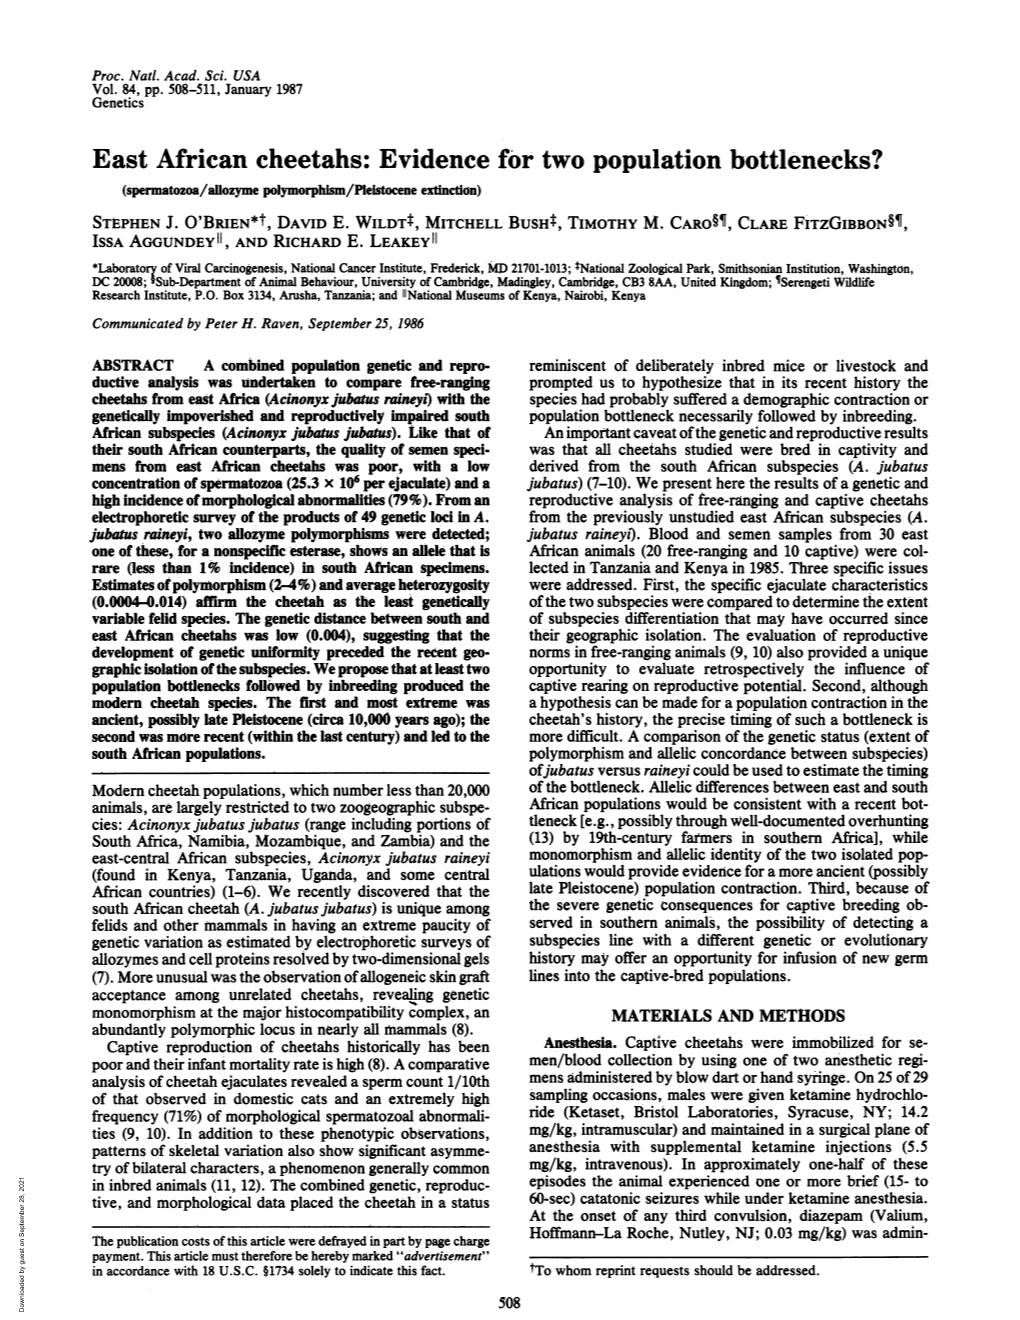 East African Cheetahs: Evidence for Two Population Bottlenecks? (Spermatozoa/Aflozyme Polymorphism/Pleistocene Extinction) STEPHEN J